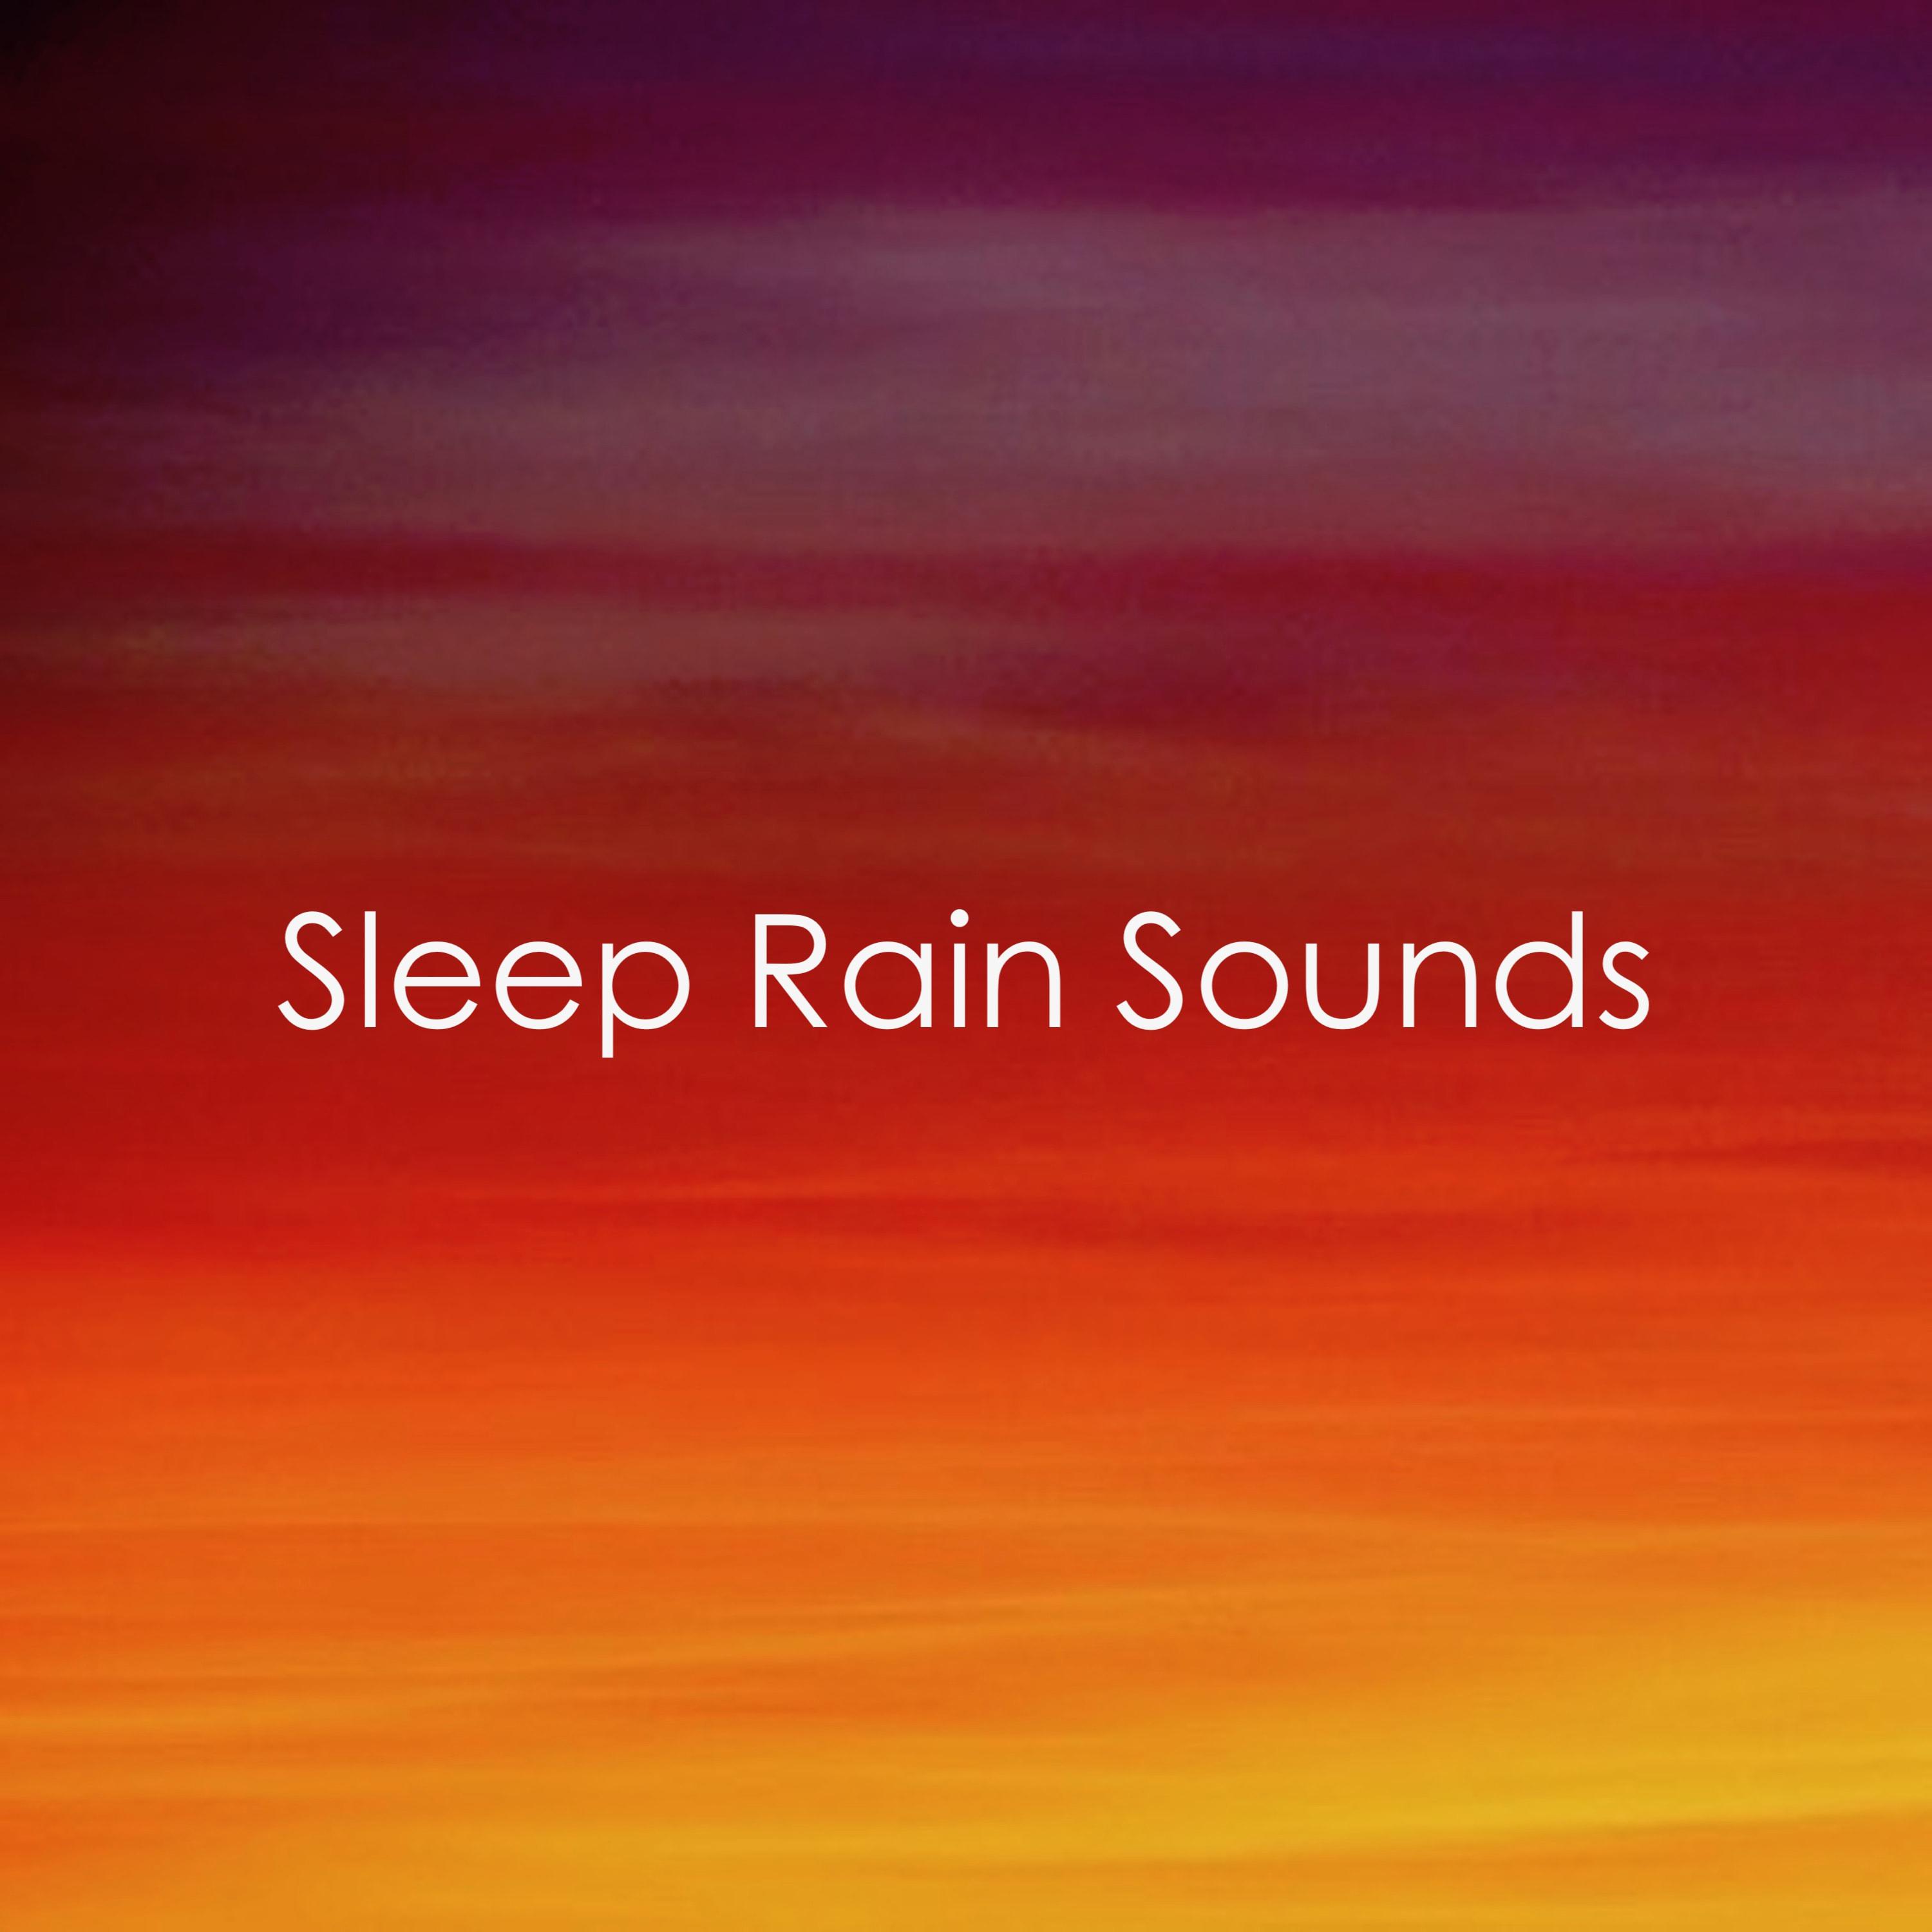 #12 Rain Sleep Sounds - Loopable Rain Sounds for A Good Night's Sleep